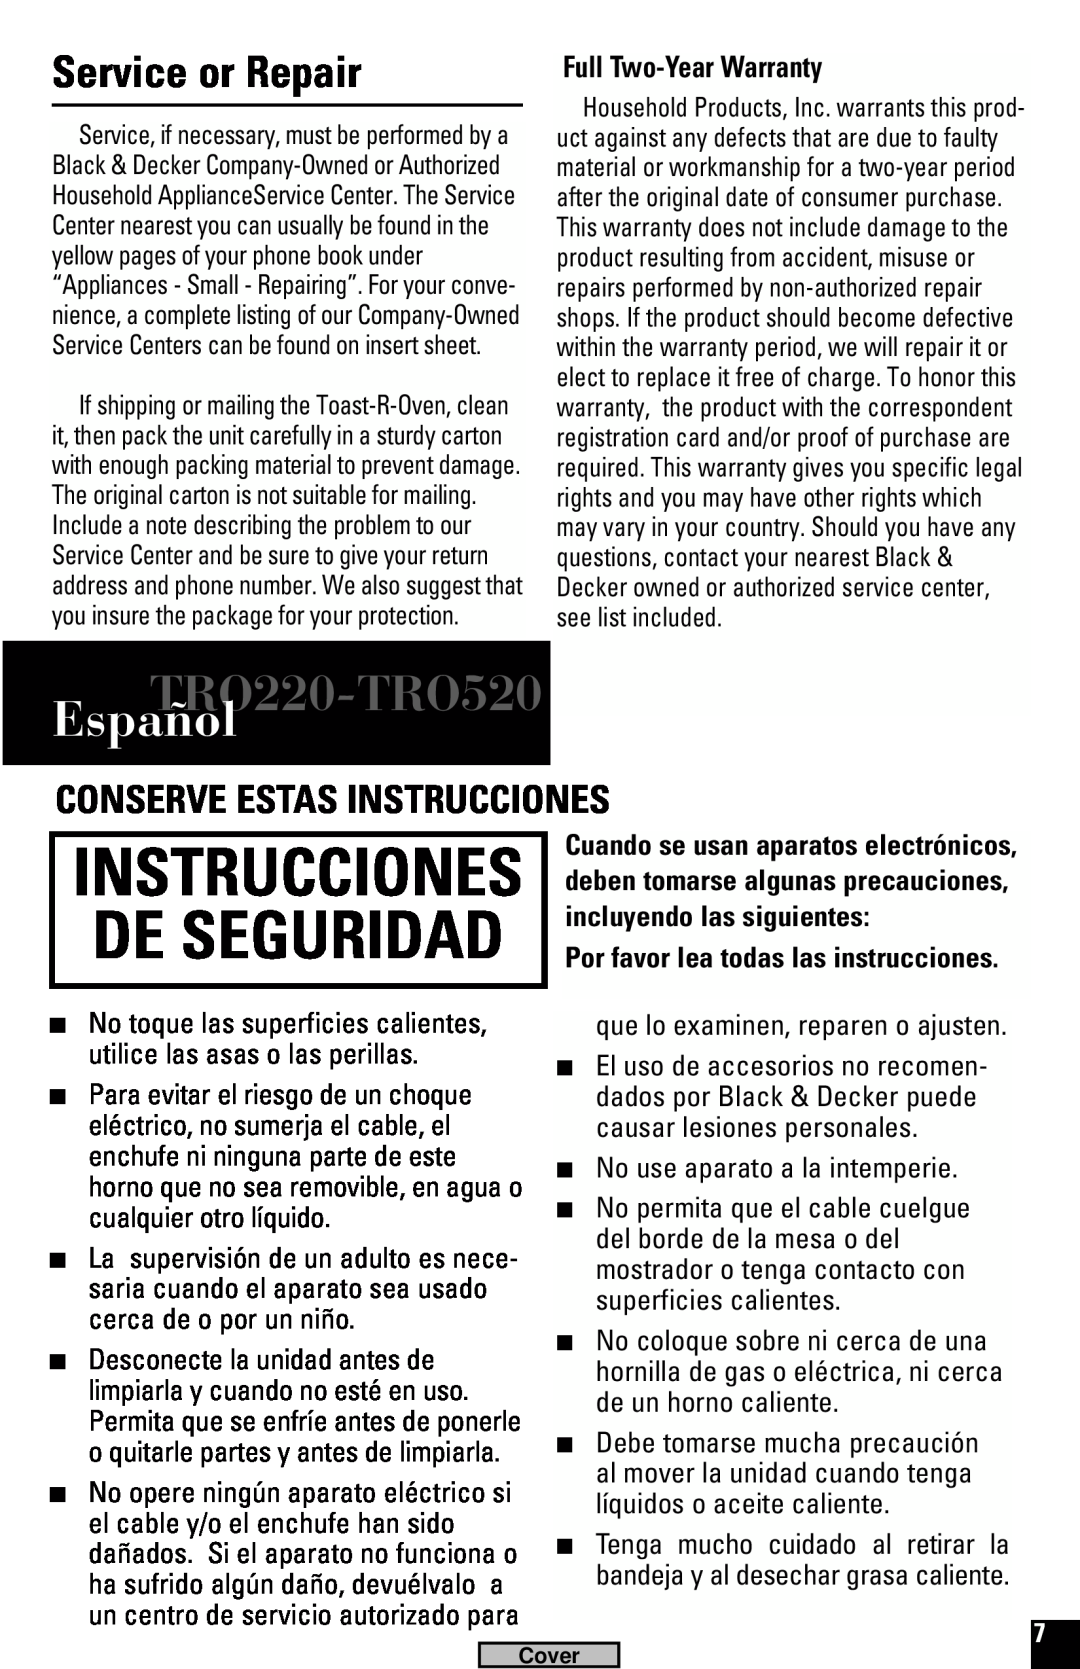 Black & Decker manual Español, Service or Repair, Conserve Estas Instrucciones, Full Two-Year Warranty, TRO220-TRO520 